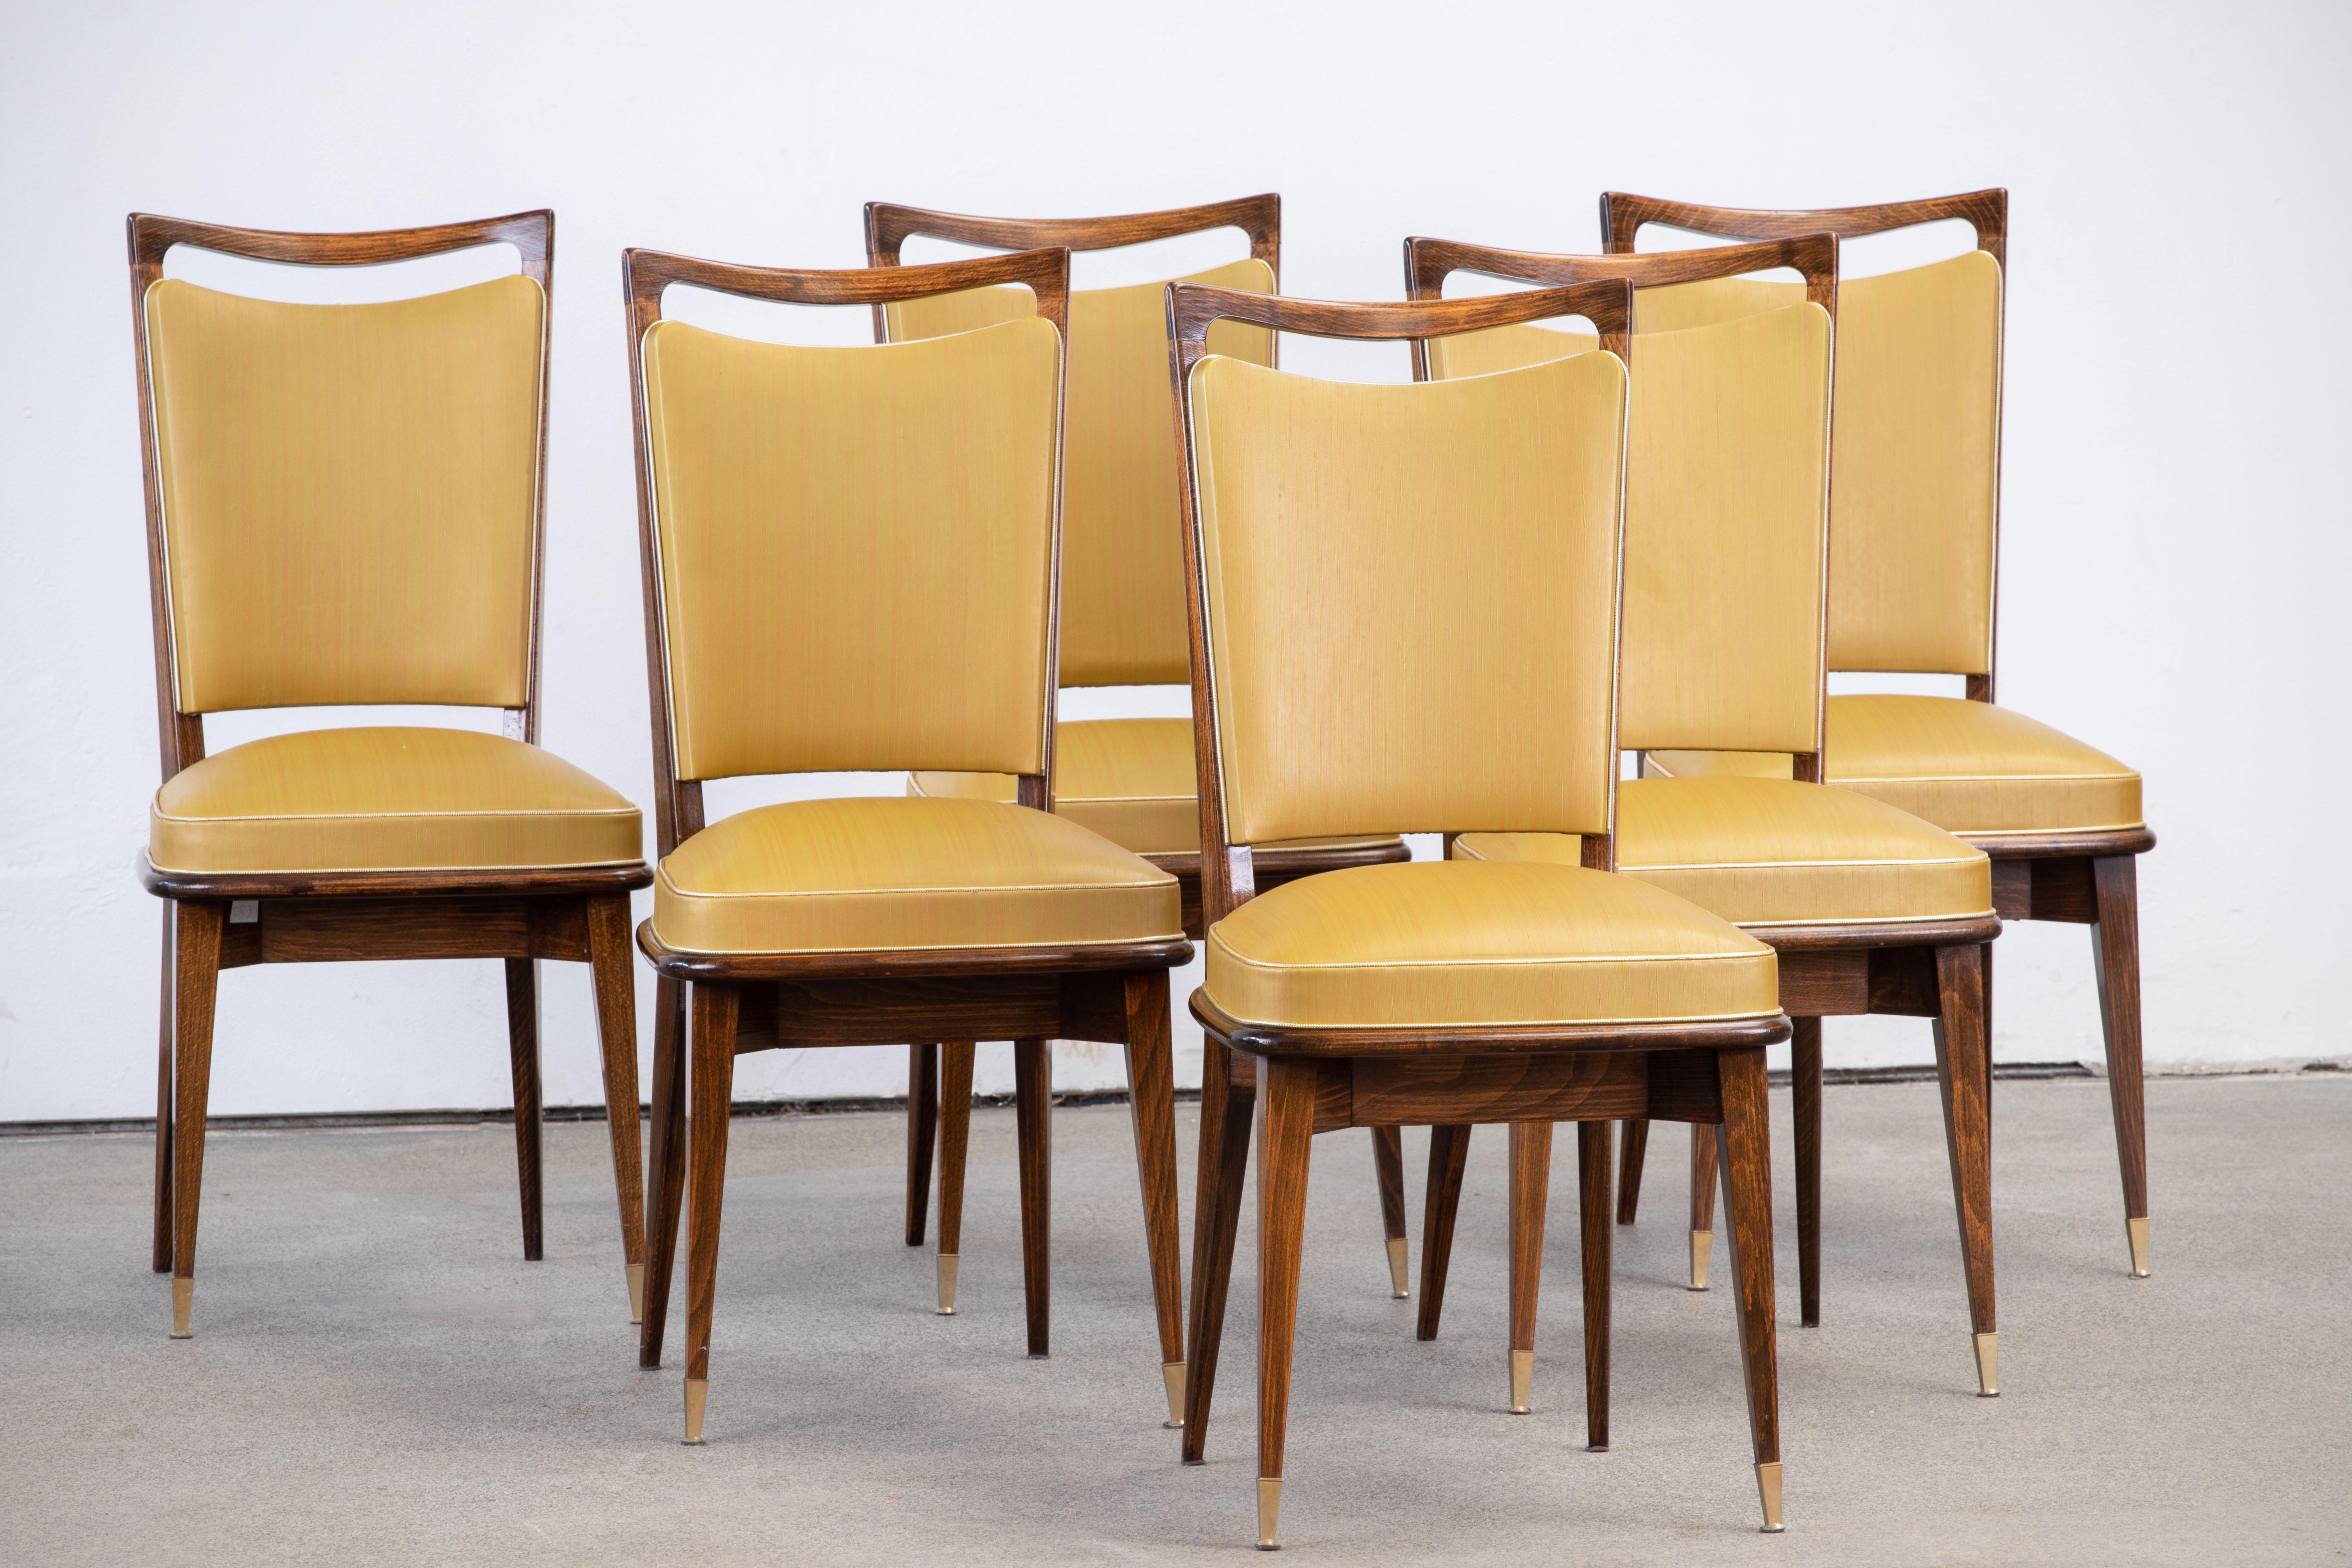 Ensemble de six chaises à haut dossier recouvertes de vynil jaune, présentant des éléments de design français traditionnels dans une finition chêne foncé.

Dans le style de René Prou, Albert-Lucien Guenot, Pomone, André Arbus, Baptistin Spade,